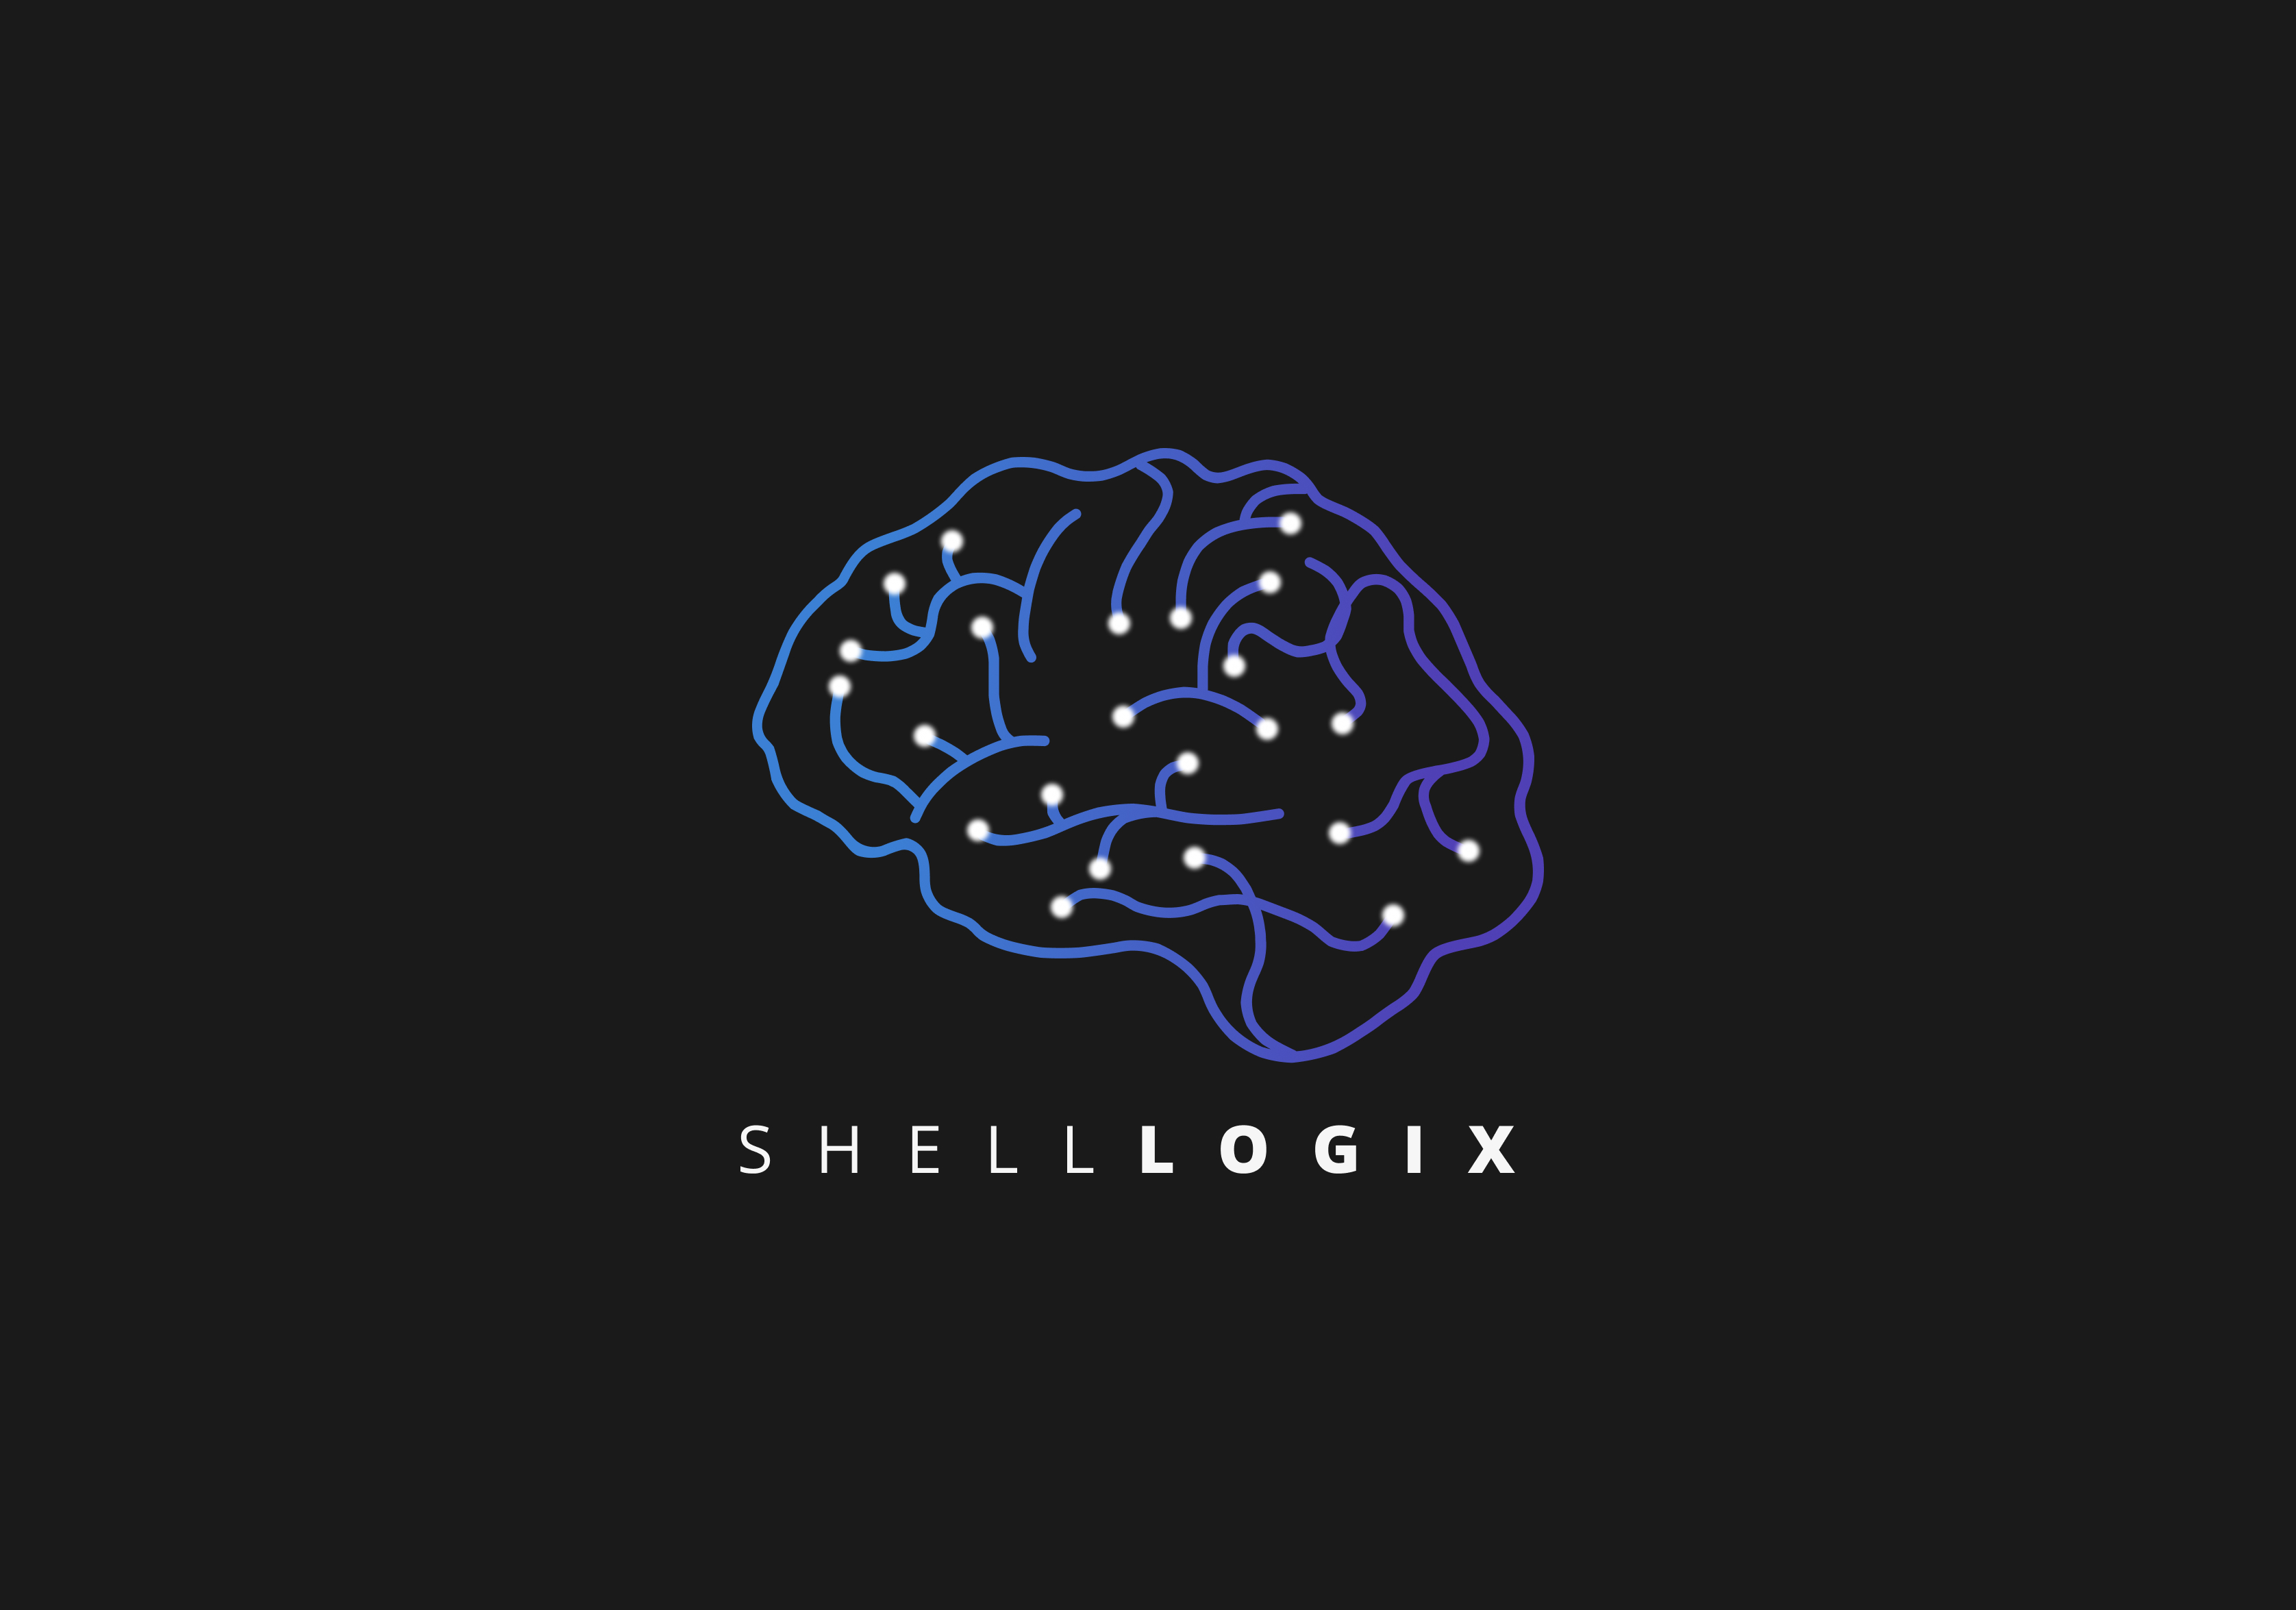 ShellLogix